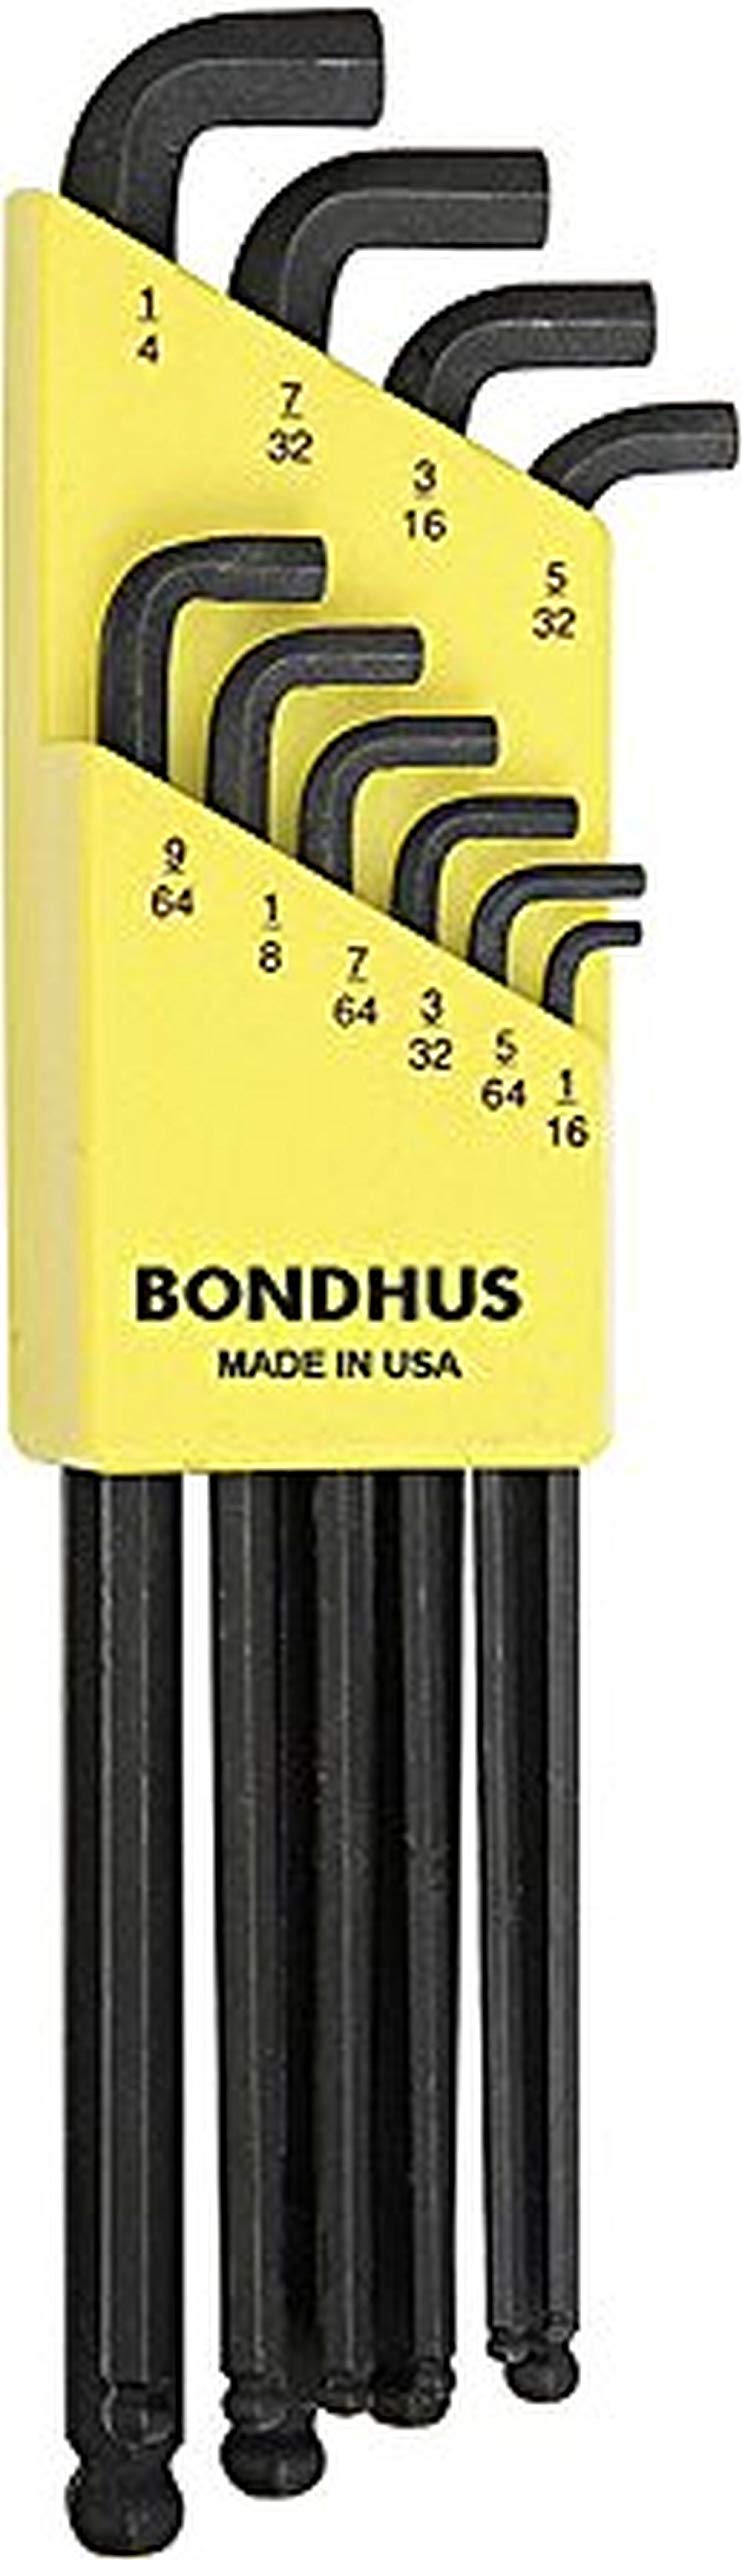 Bondhus 16538 Set of 10 Balldriver Stubby L-wrenches, sizes 1/16-1/4"